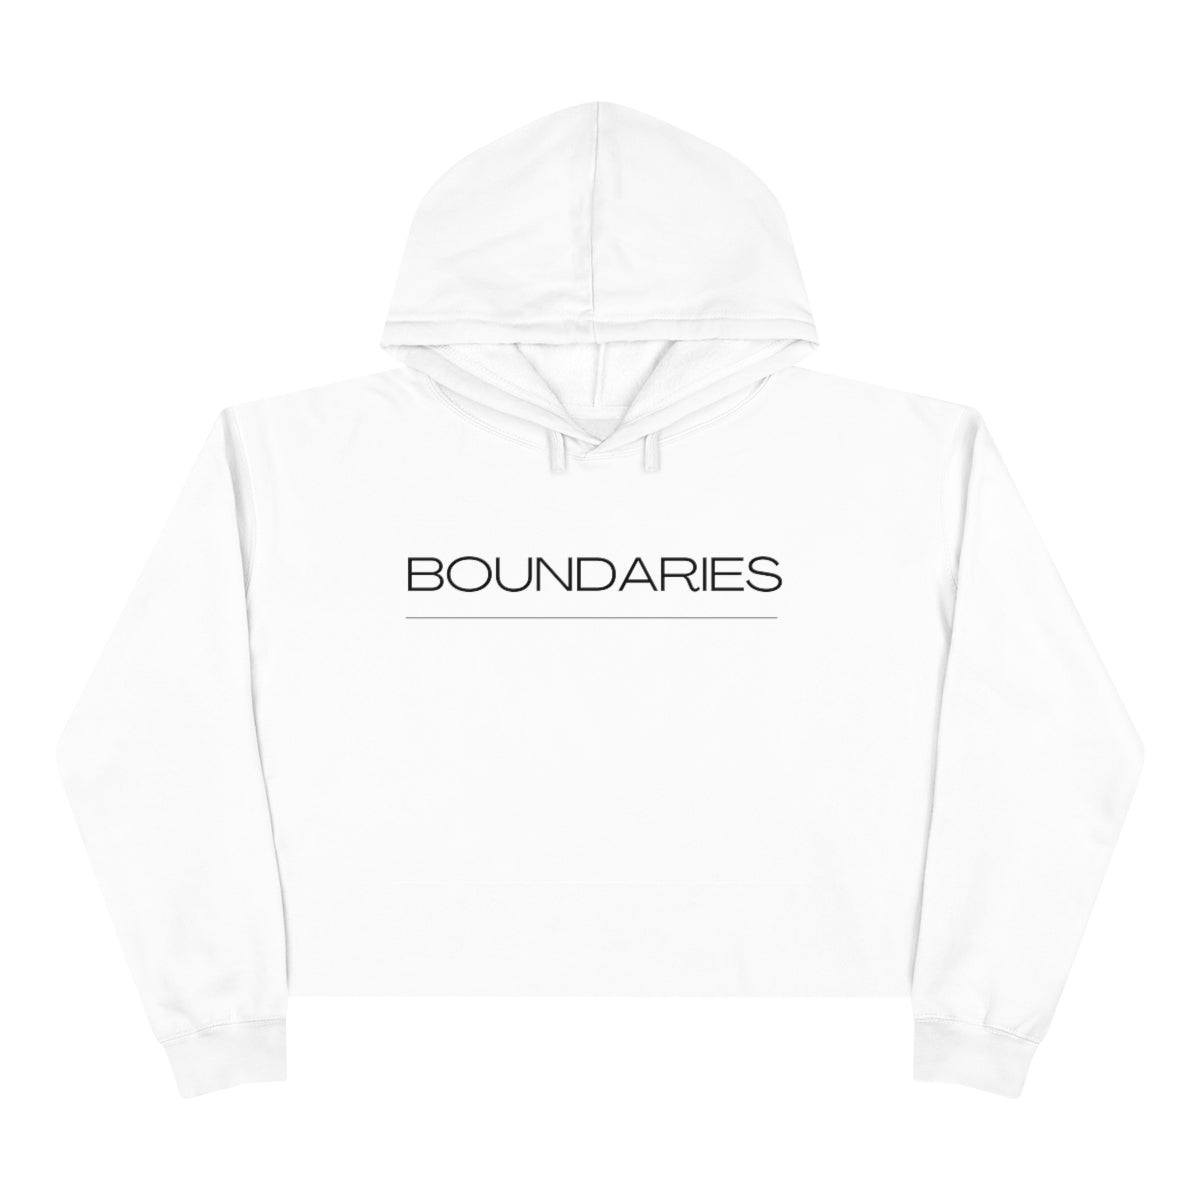 Boundaries - Crop Hoodie